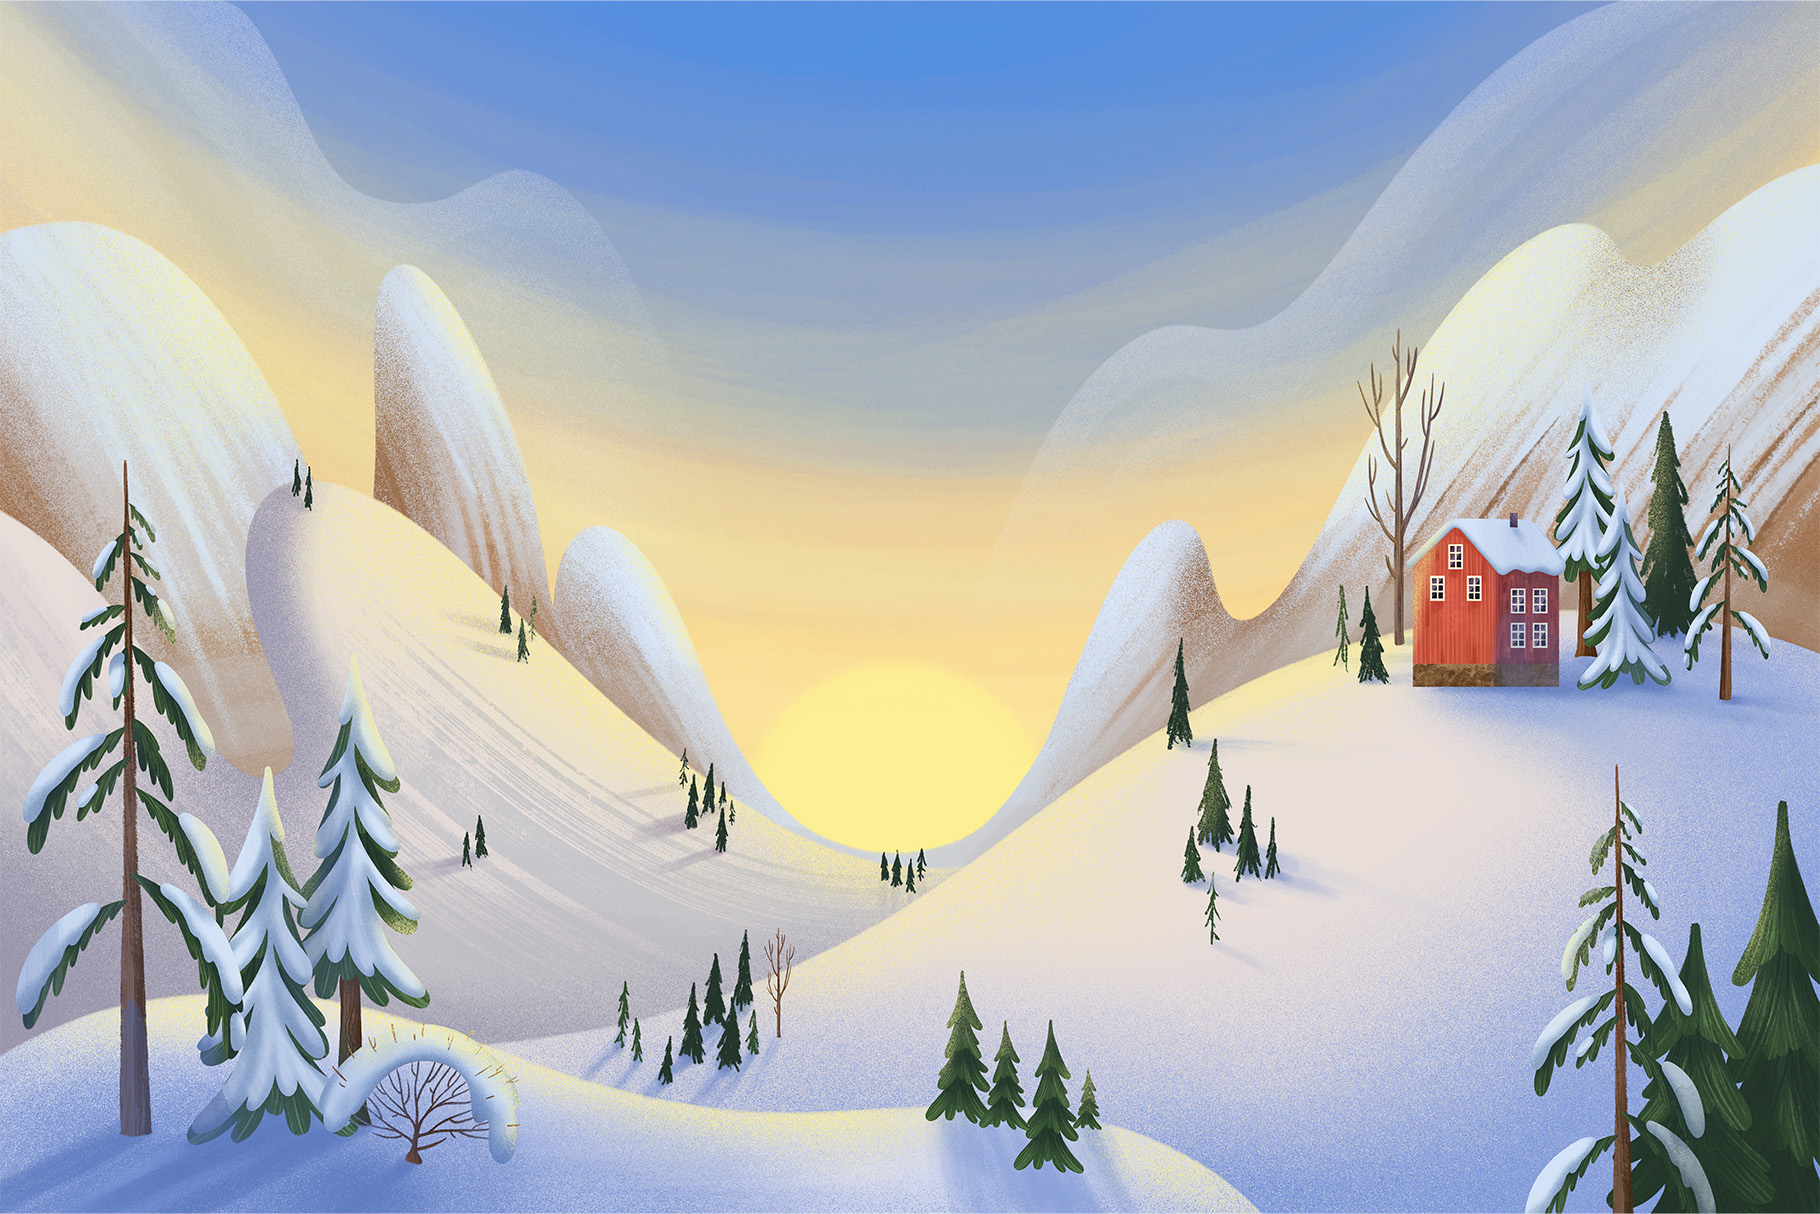 Winter Landscape Illustration Set (PSD, PNG, JPEG Format)